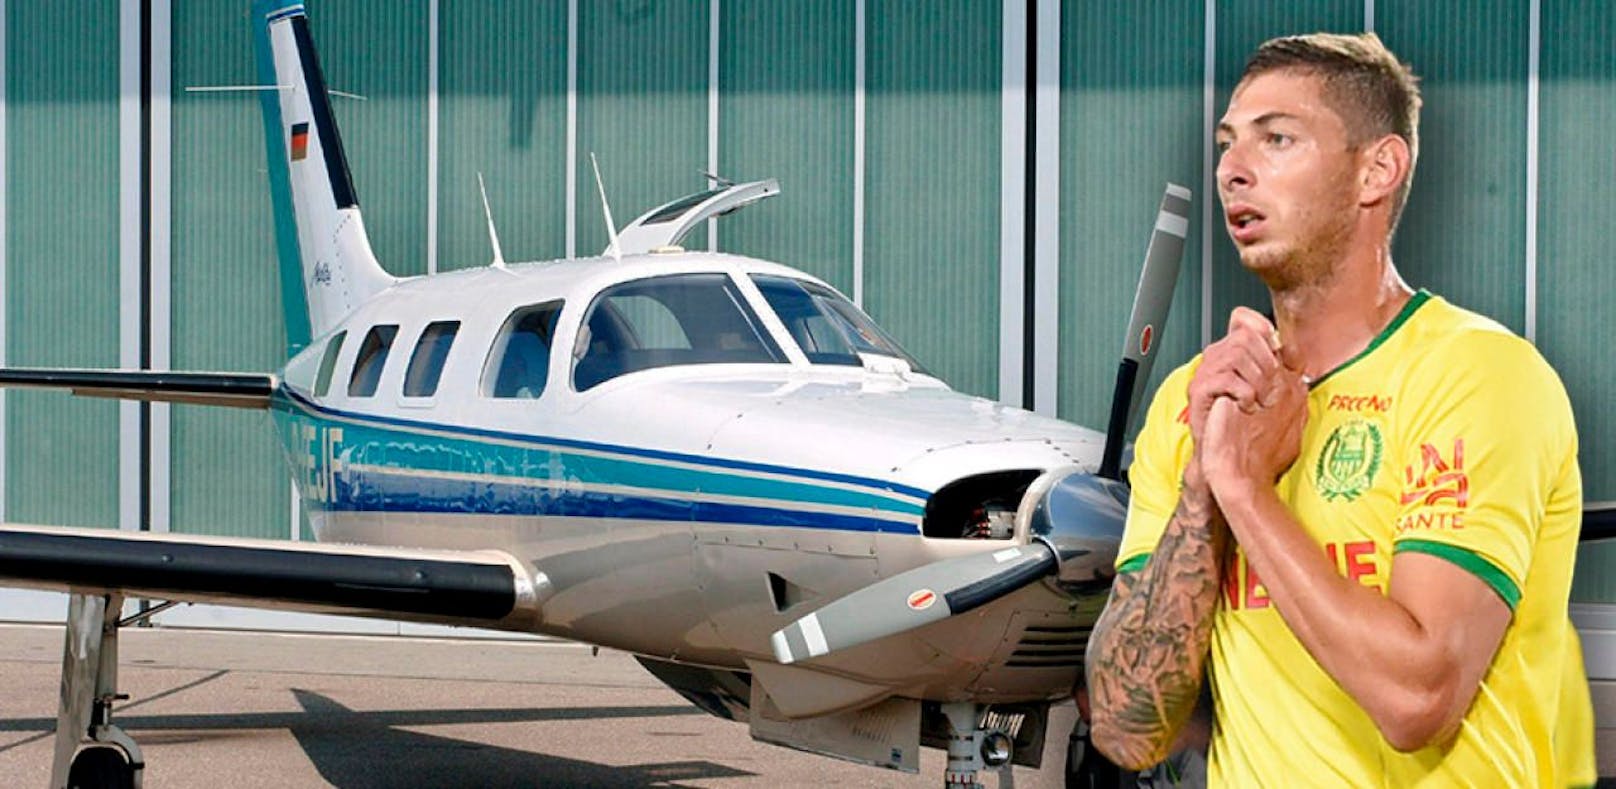 Sala-Todesflug: Pilot wusste von Mängeln am Flugzeug